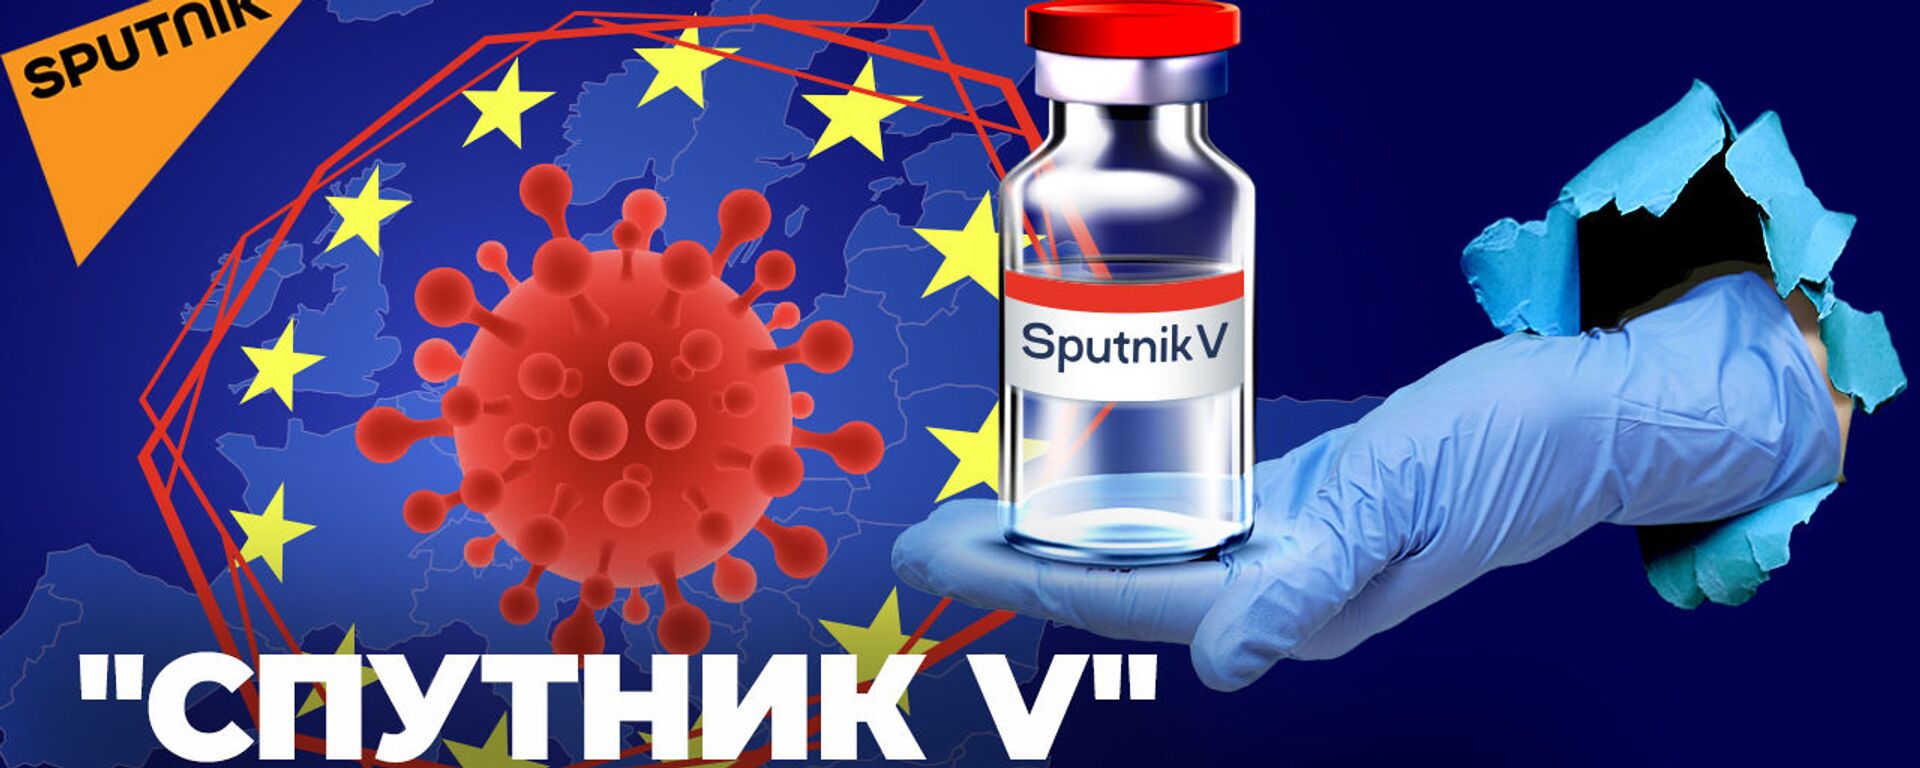 Спутник V спас европейскую страну. Теперь российскую вакцину пиарят в ООН - Sputnik Latvija, 1920, 13.05.2021